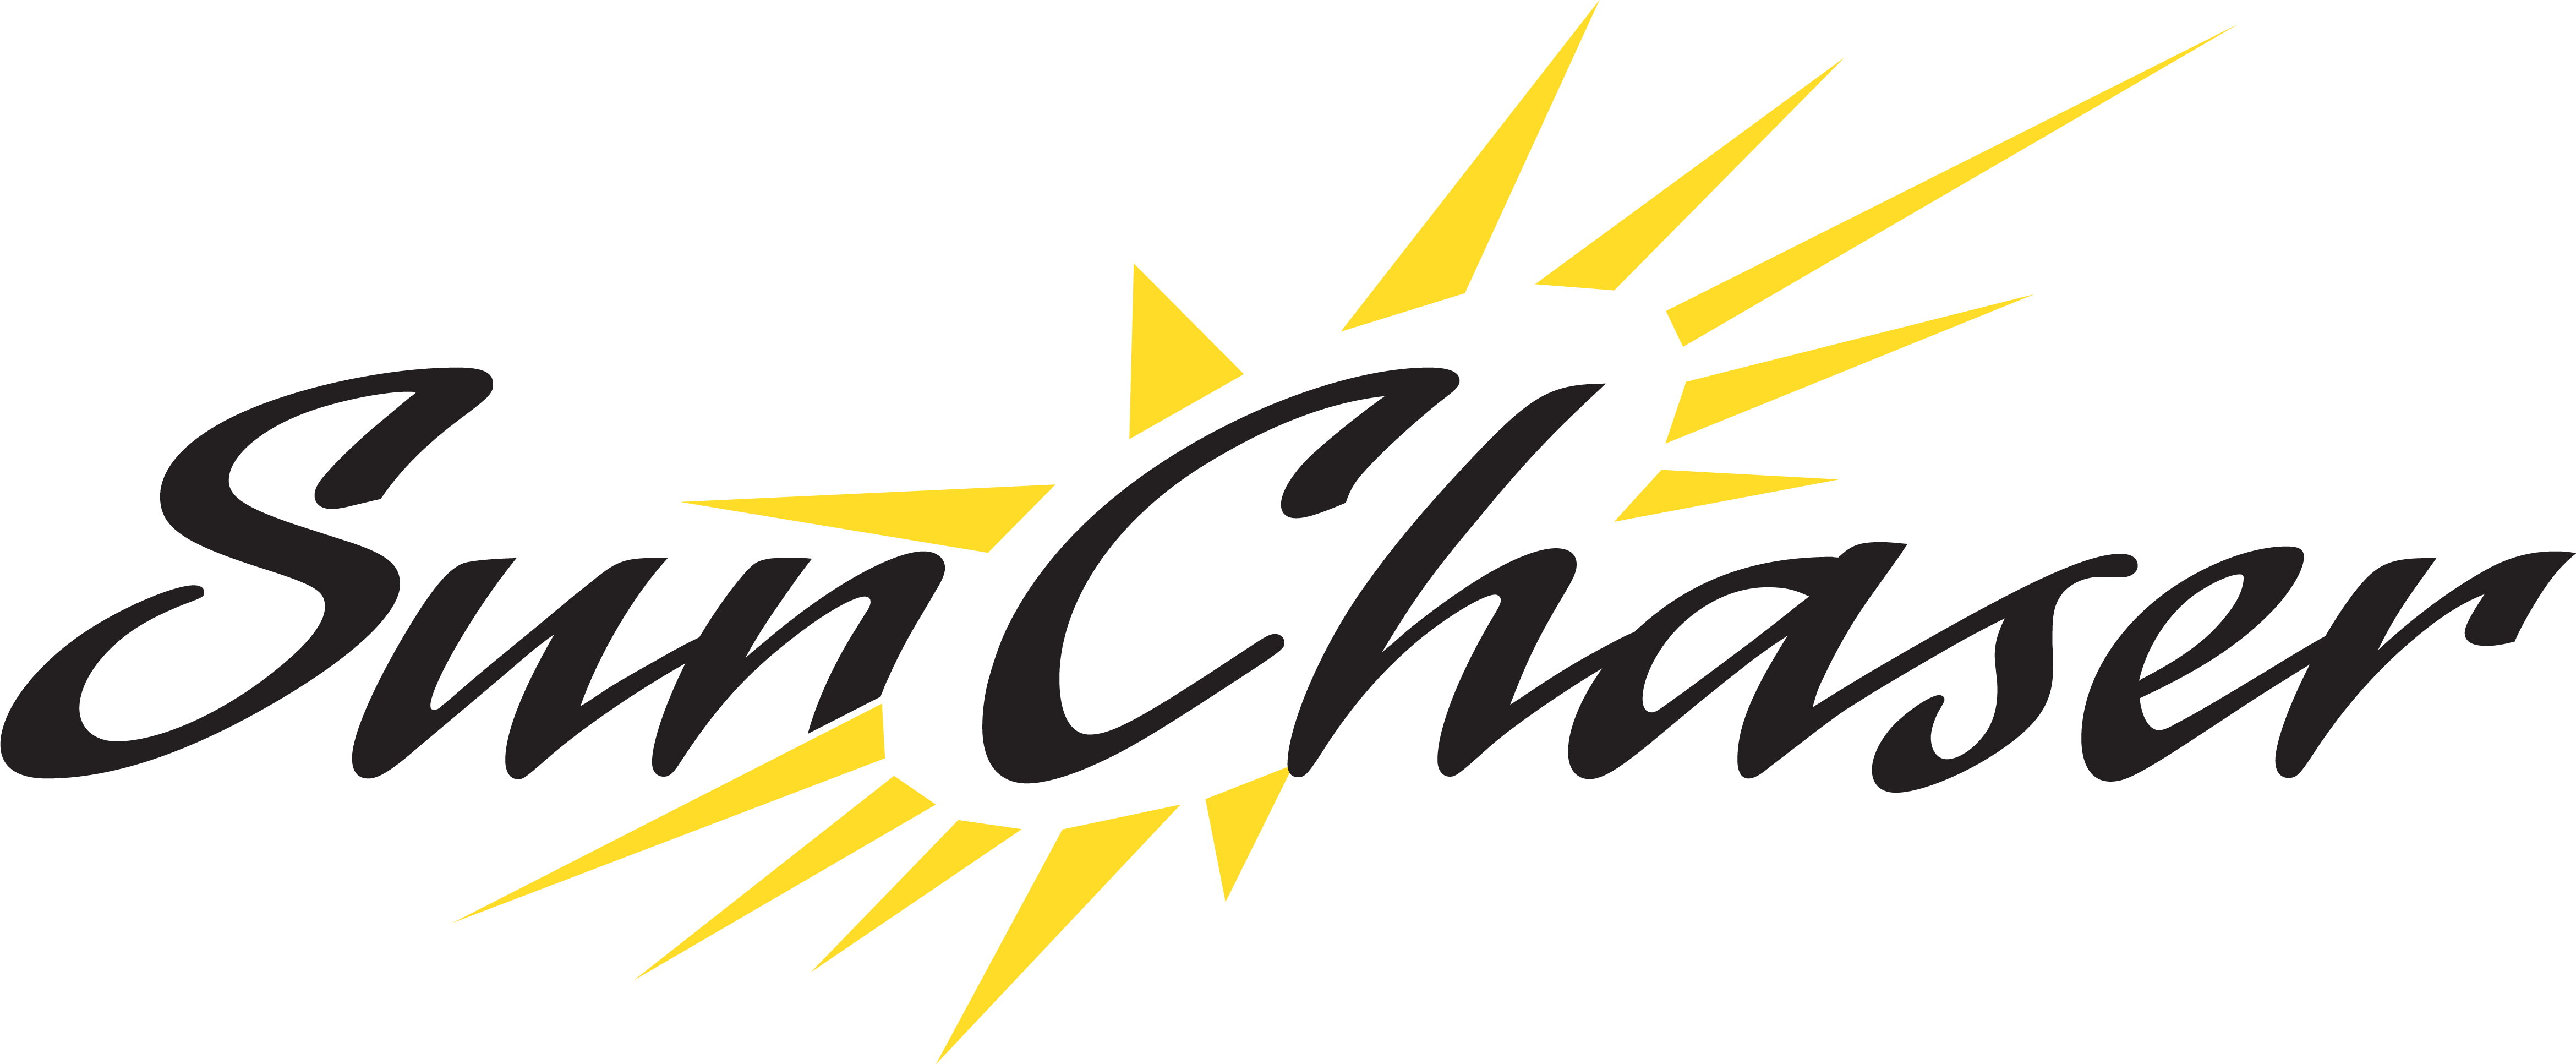 SunChaser logo